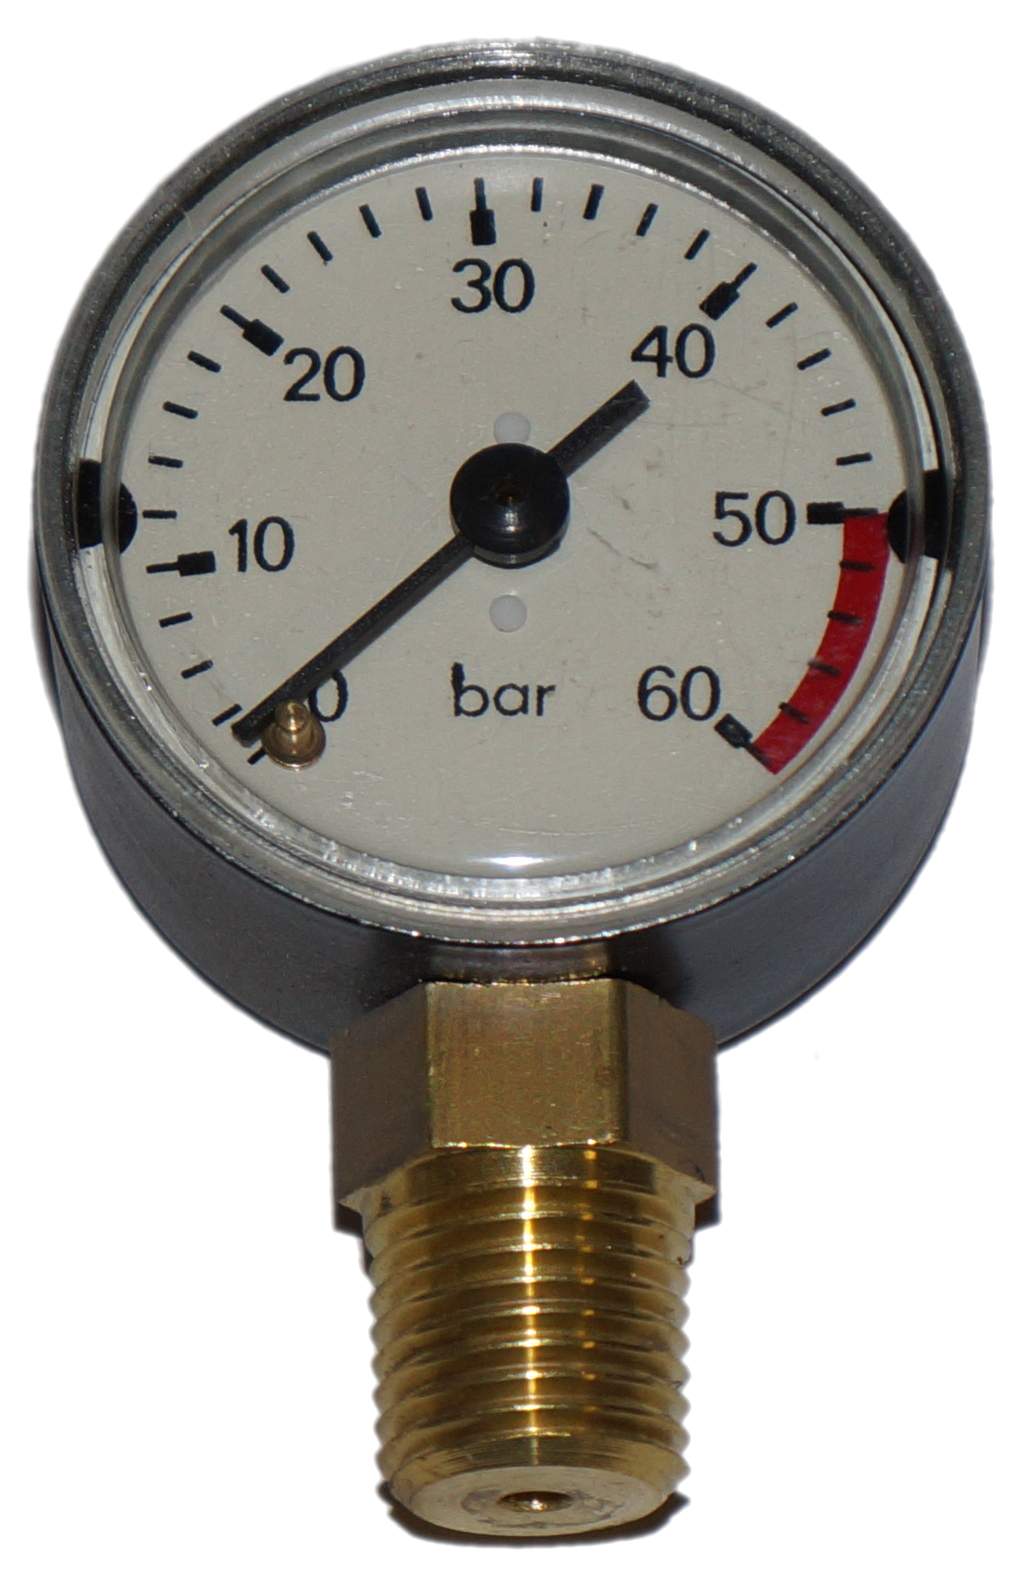 Test pump pressure gauge